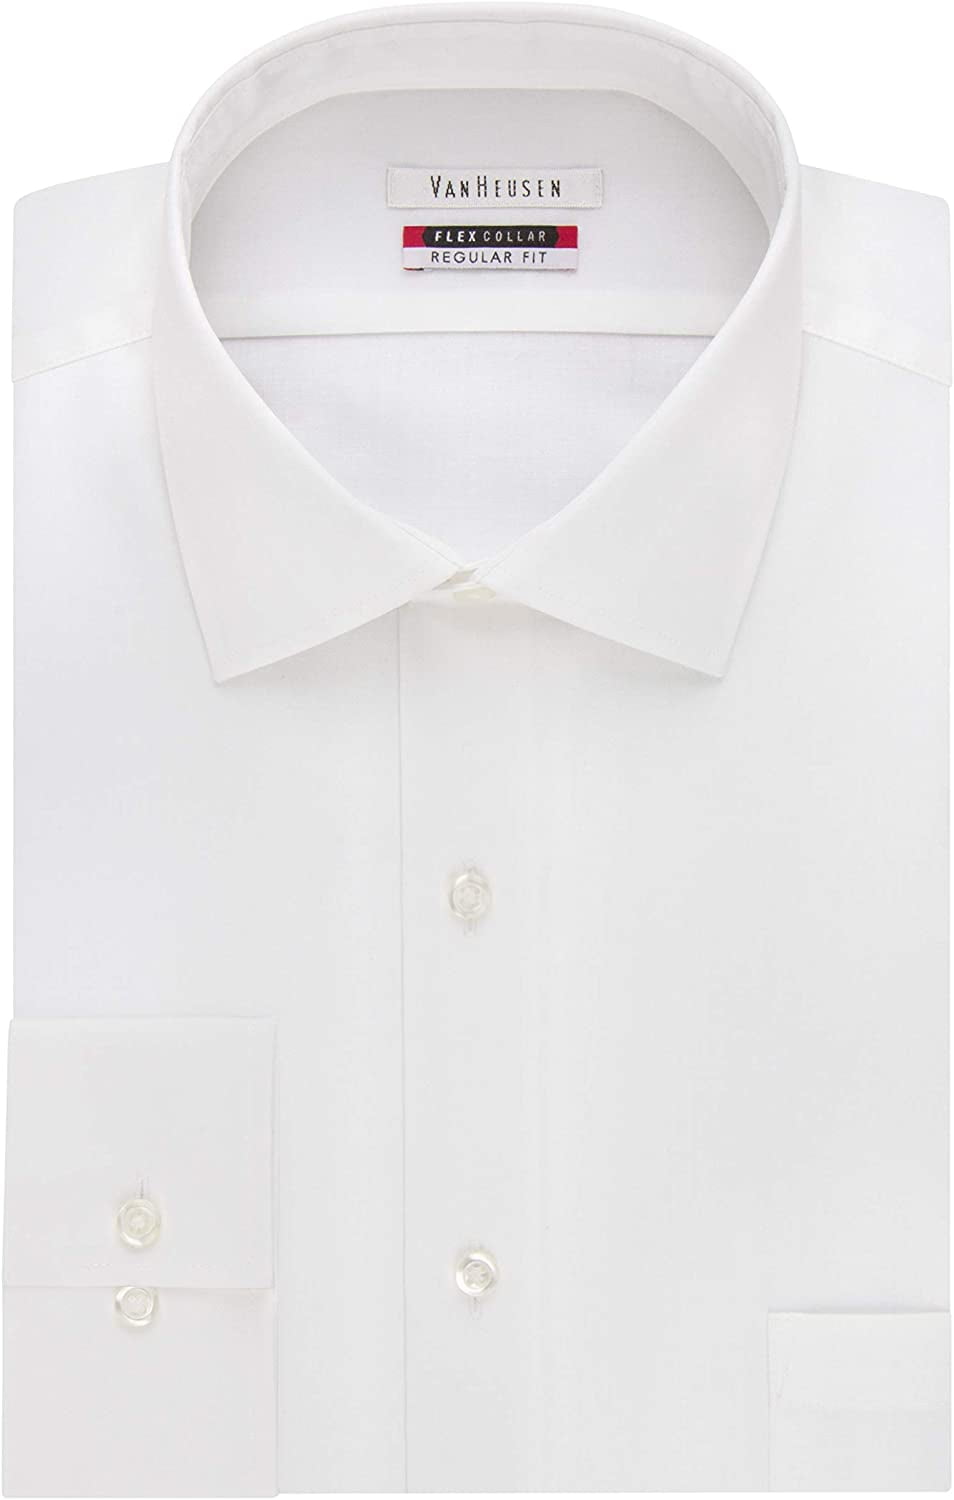 men's flex collar dress shirts